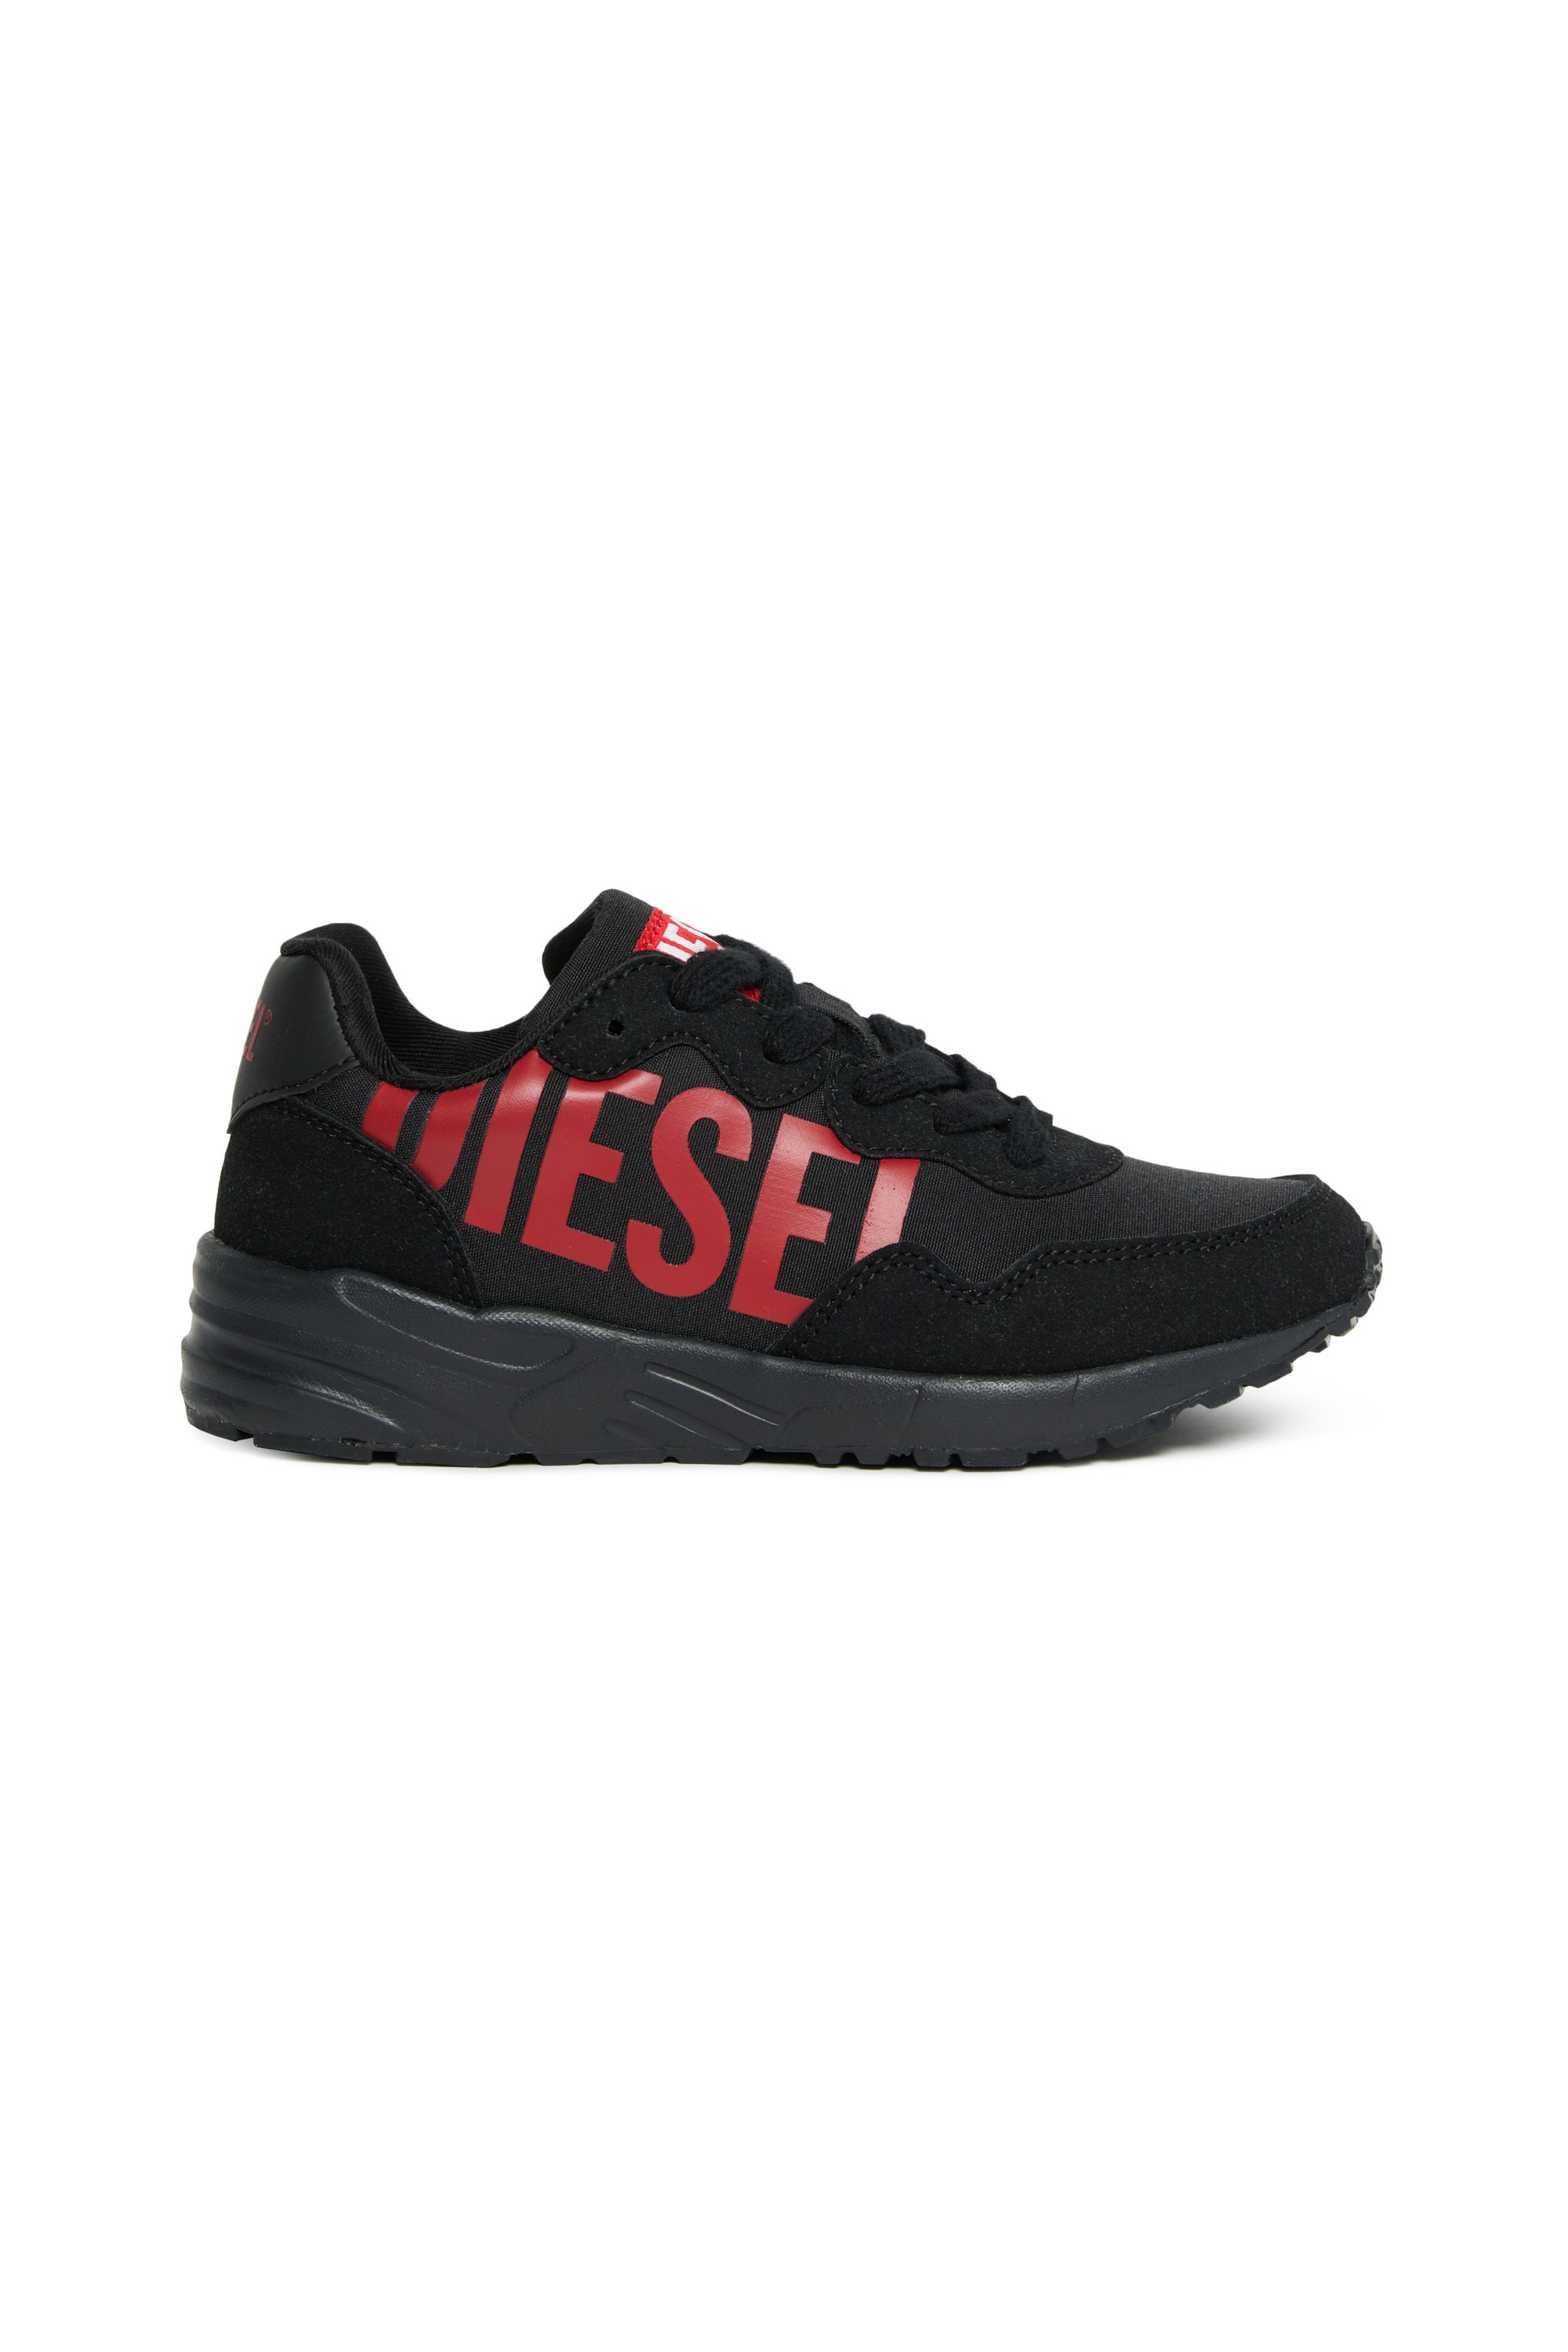 Diesel - Sneakers en nylon avec imprimé Diesel brillant - Footwear - Mixte - Polychrome